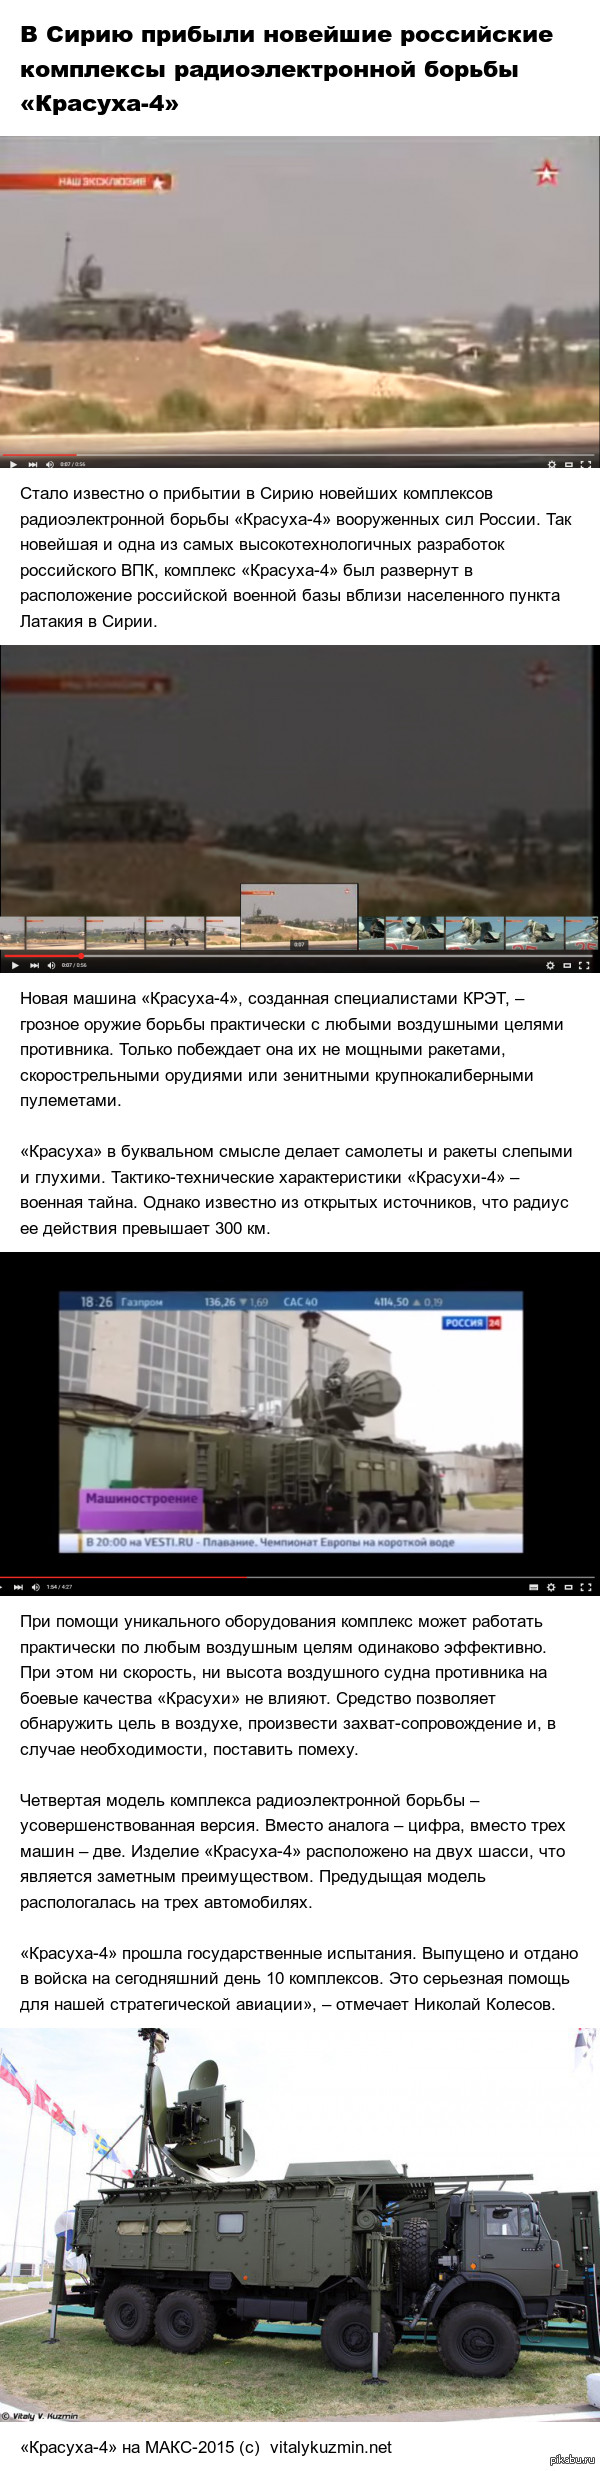         -4  http://military-informant.com/airforca/v-siriyu-pribyili-noveyshie-rossiyskie-kompleksyi-radioelektronnoy-borbyi-krasuha-4.html